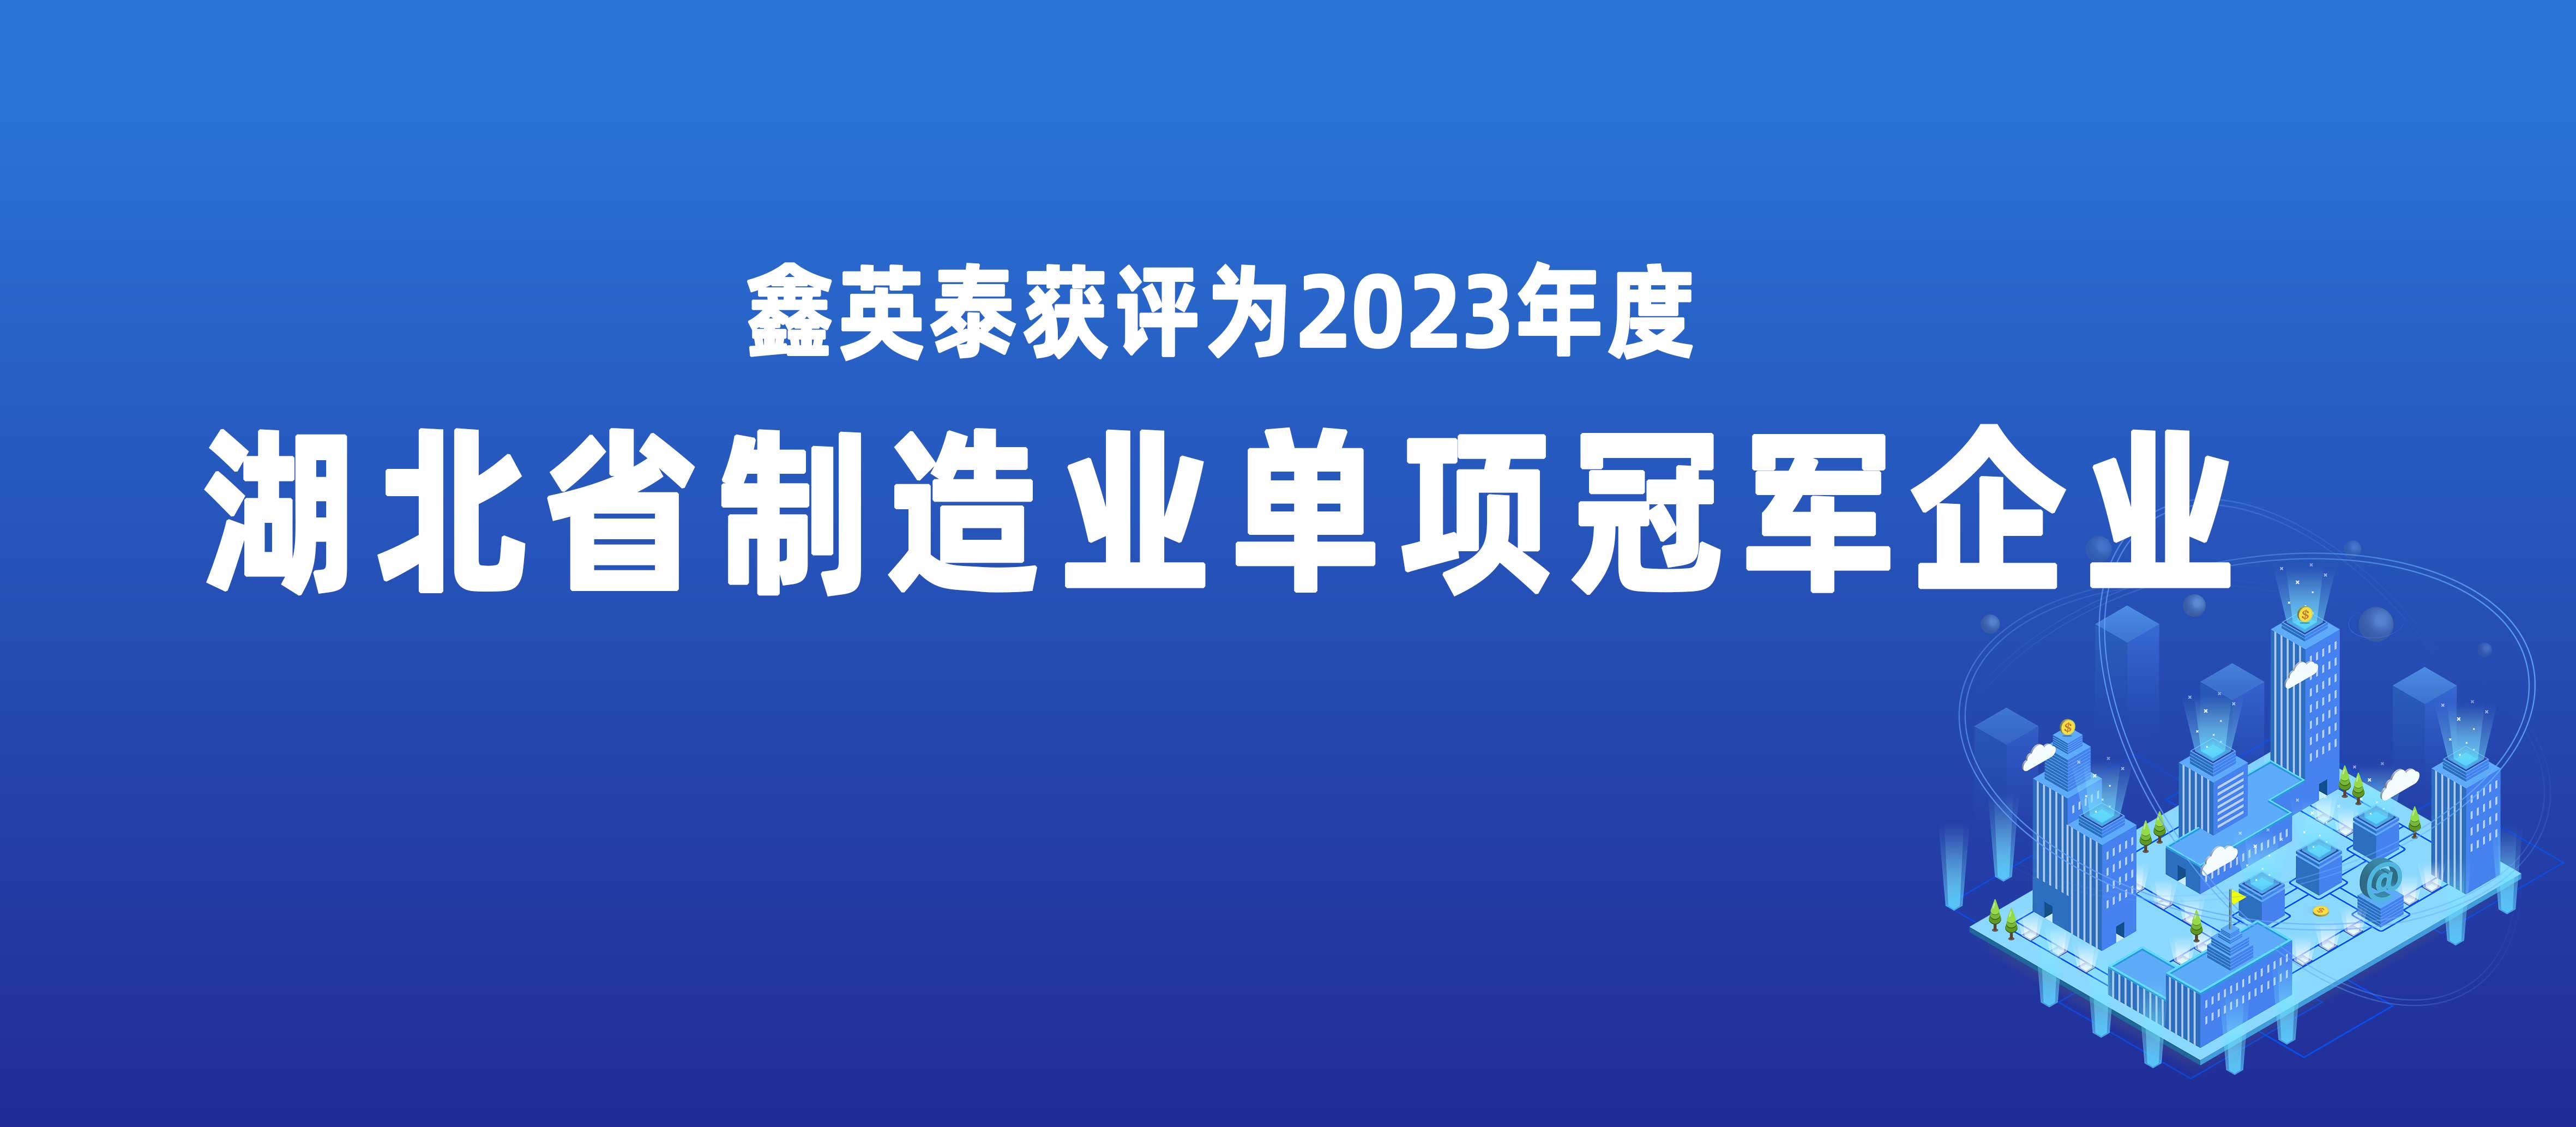 3777金沙娱场城获评2023年度湖北省制造业单项冠军企业